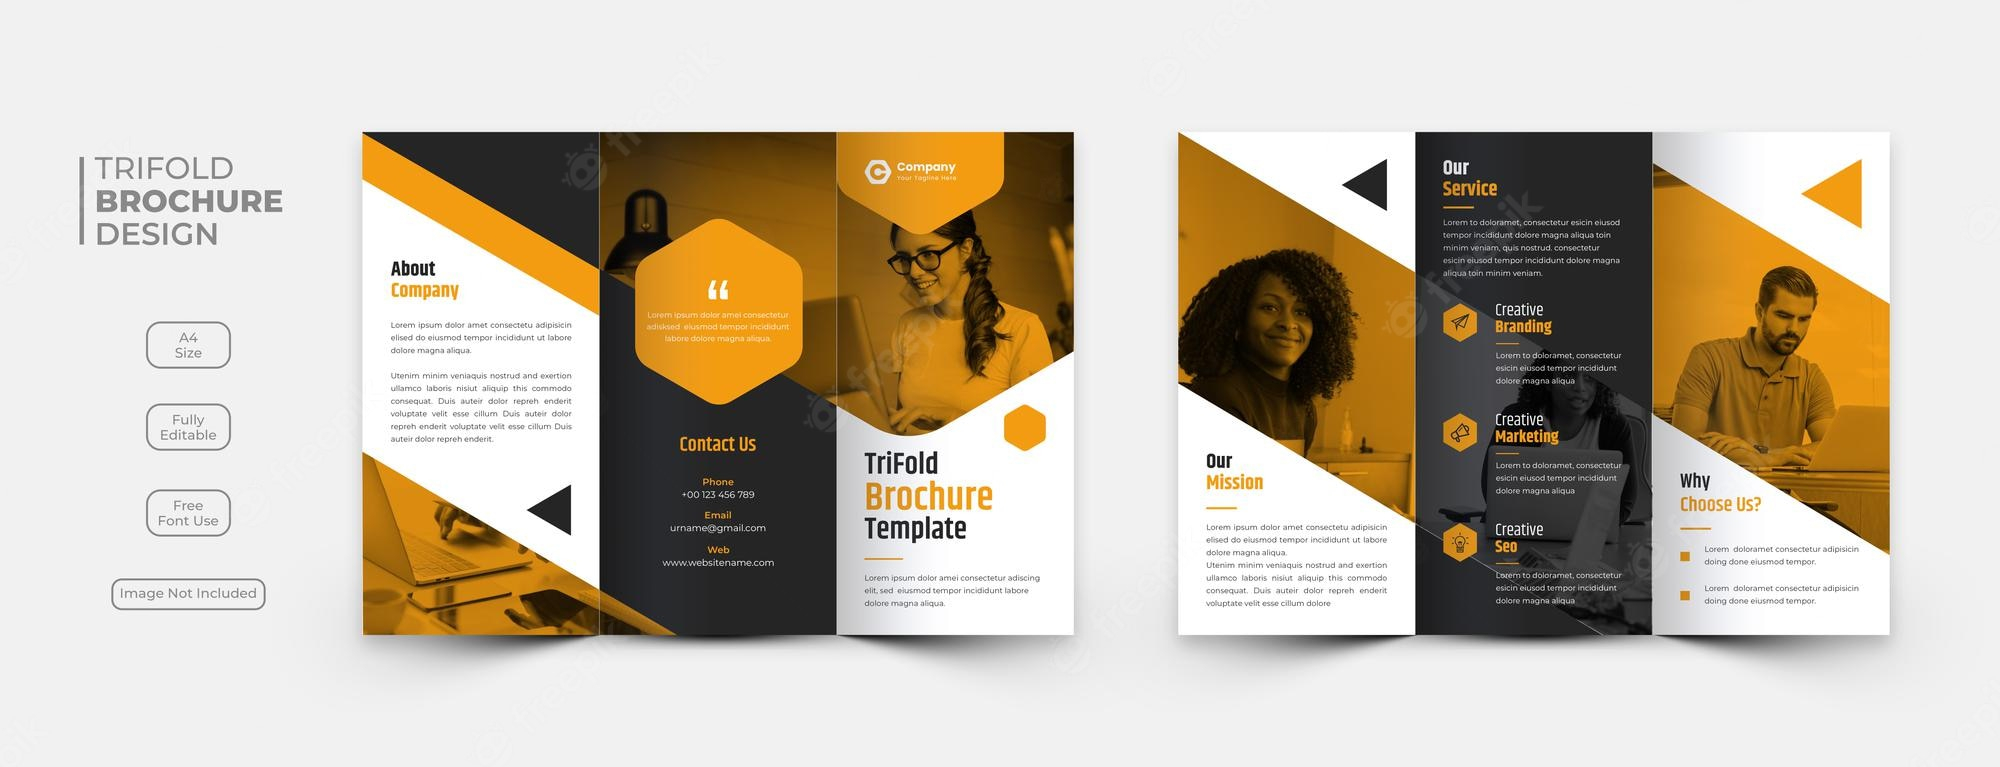 Brochure design Images - Free Download on Freepik For Online Free Brochure Design Templates